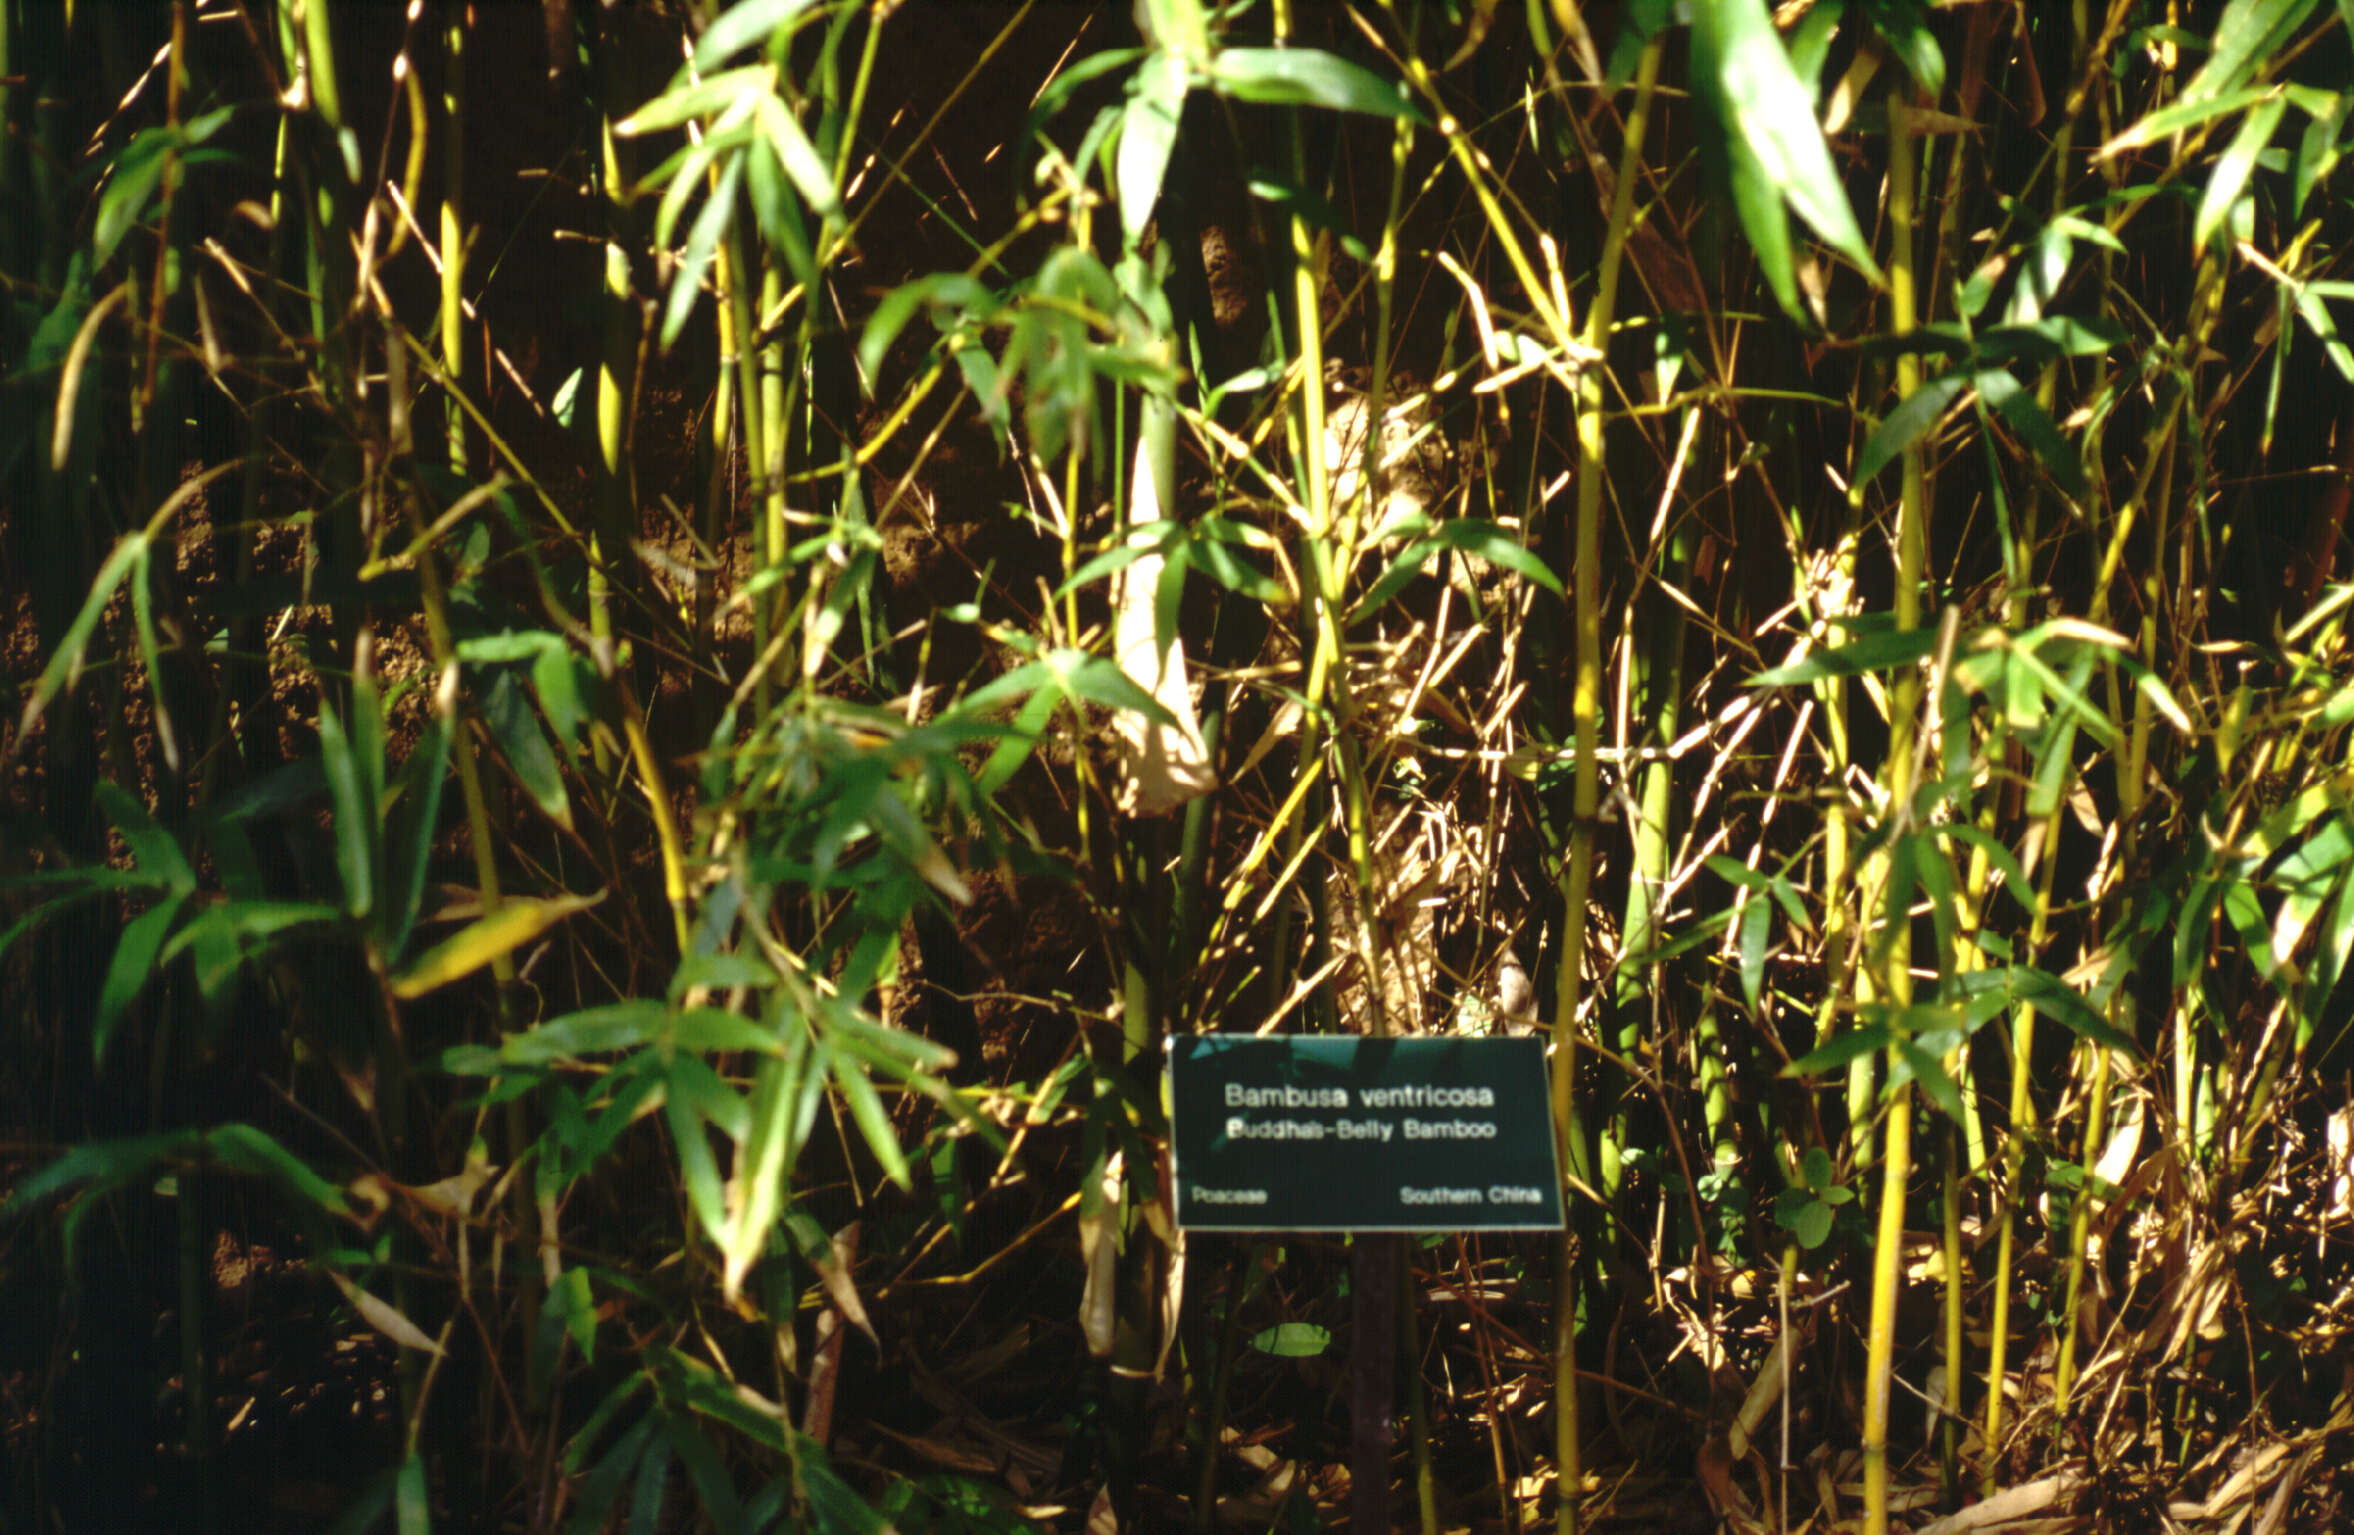 Image of Bambusa ventricosa McClure